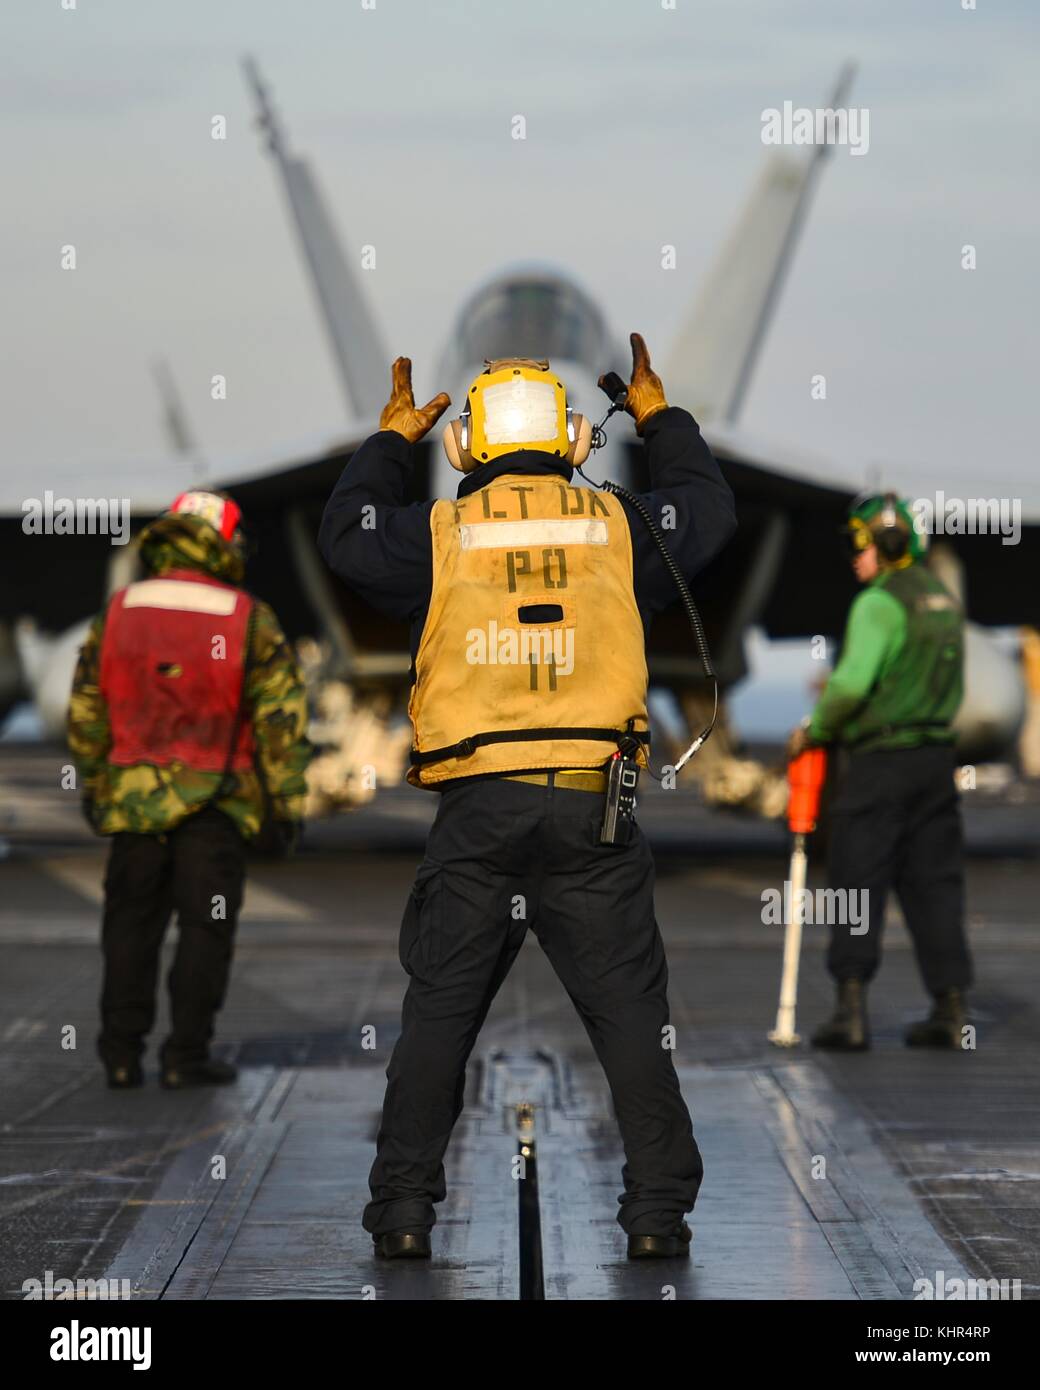 U.s. navy marinai di eseguire operazioni di volo sul ponte di volo a bordo della marina degli Stati Uniti nimitz-class portaerei USS nimitz novembre 13, 2017 nell'oceano pacifico. (Foto di cole schroeder via planetpix) Foto Stock